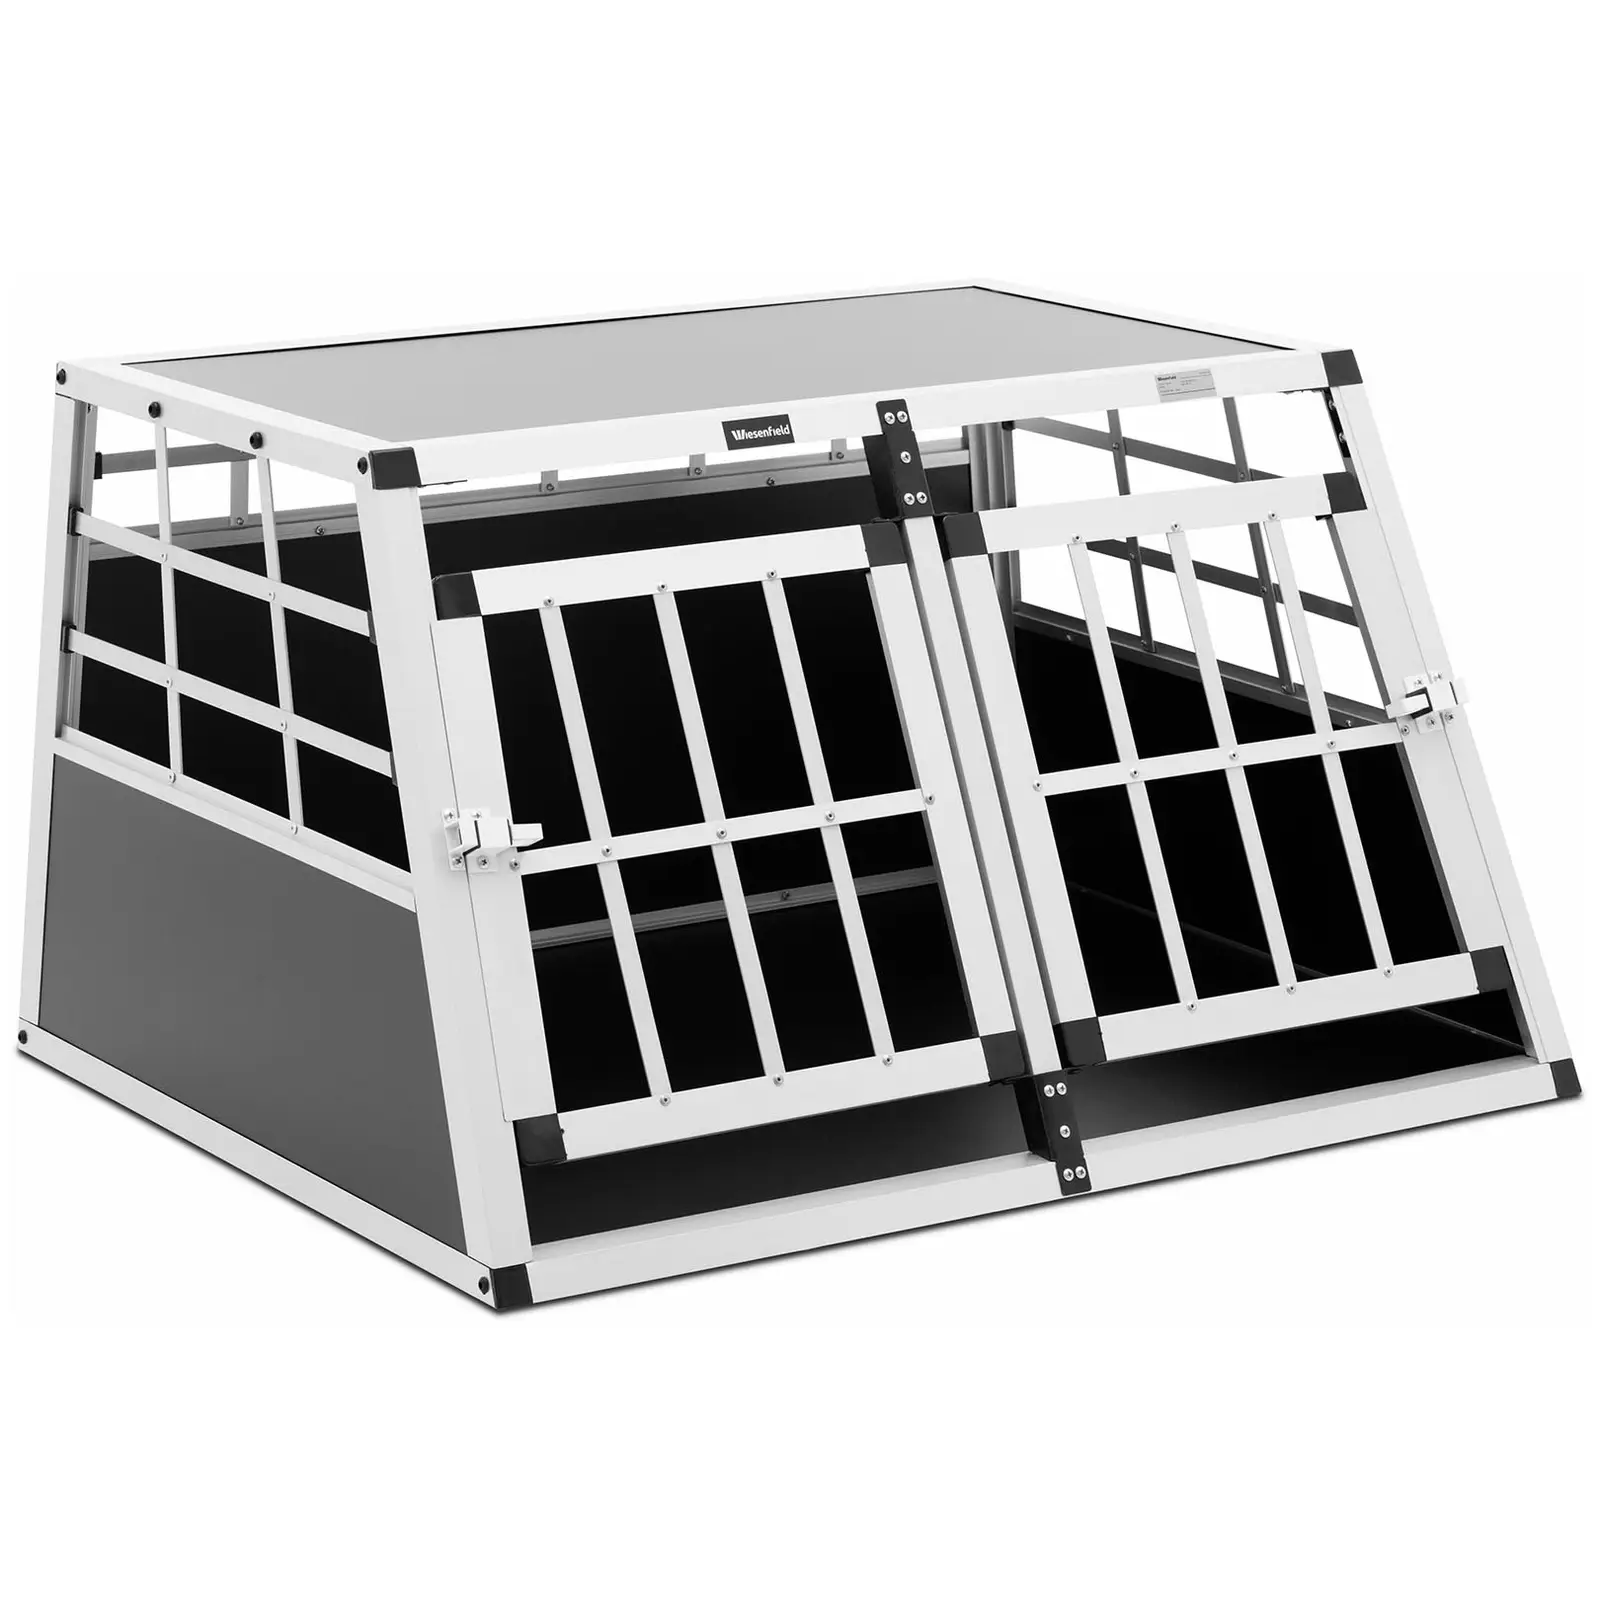 Přepravní box pro psa - hliník - sešikmený tvar - 69 x 90 x 50 cm